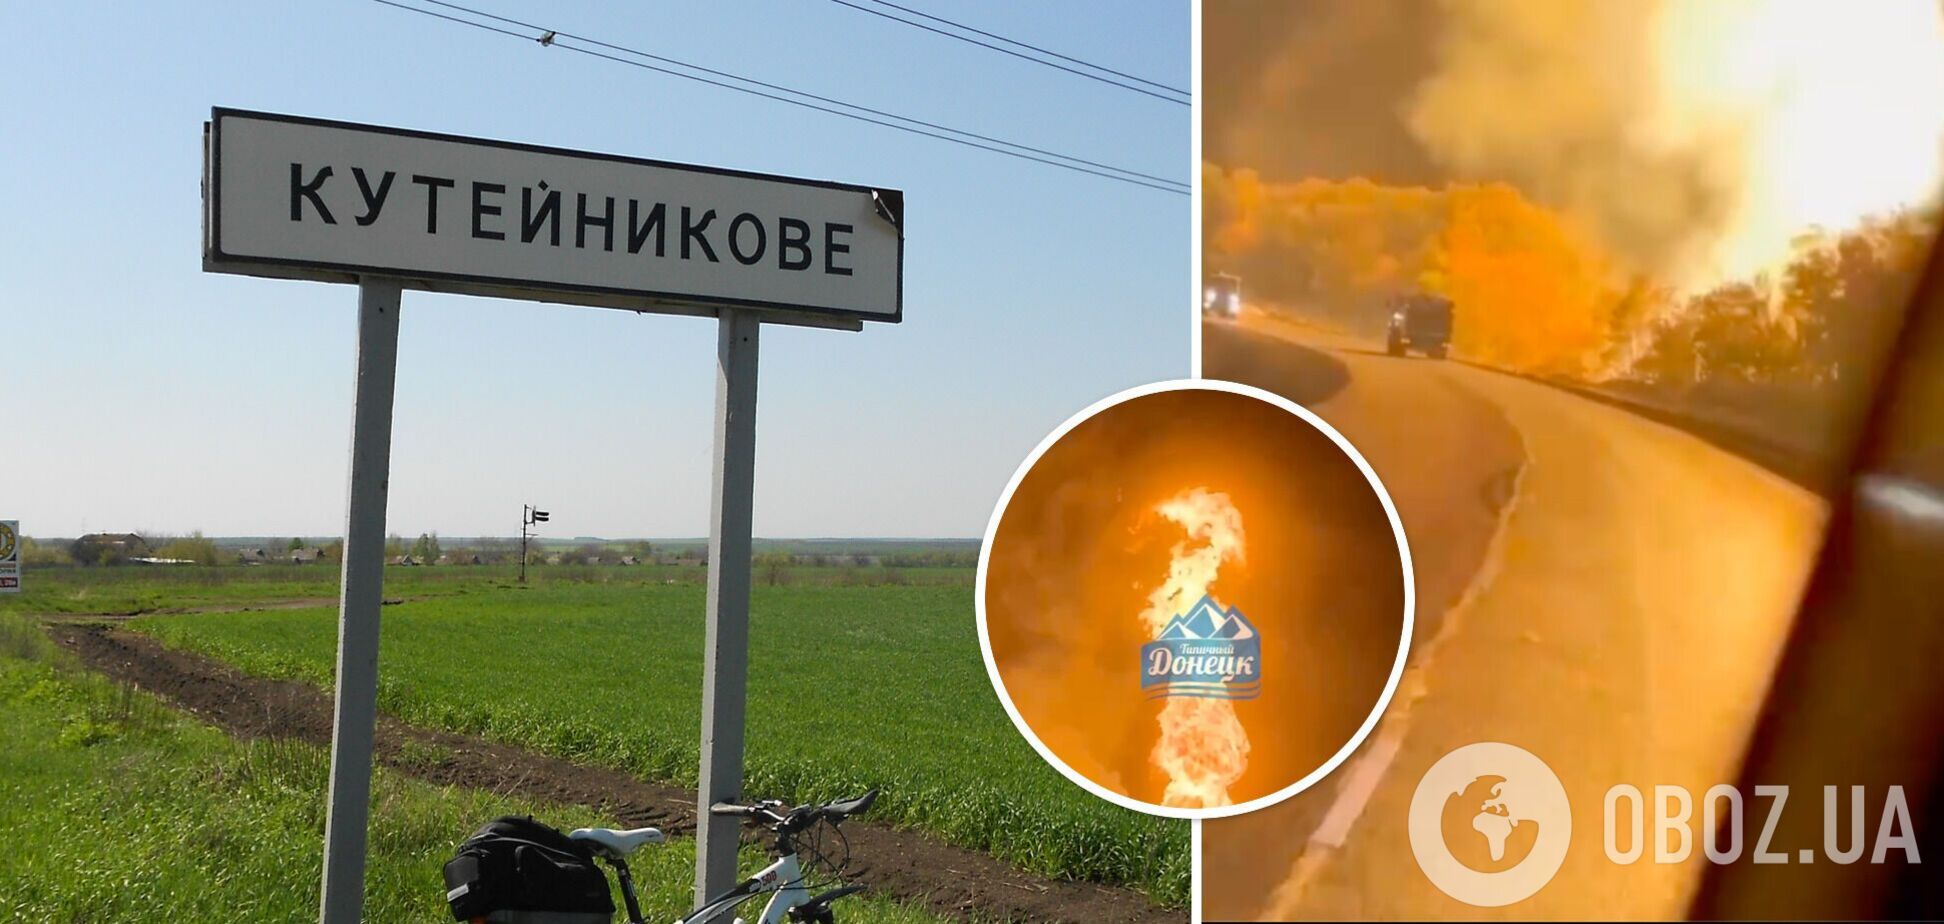 В оккупированном Кутейниково на Донбассе горит газопровод: первые подробности. Фото и видео